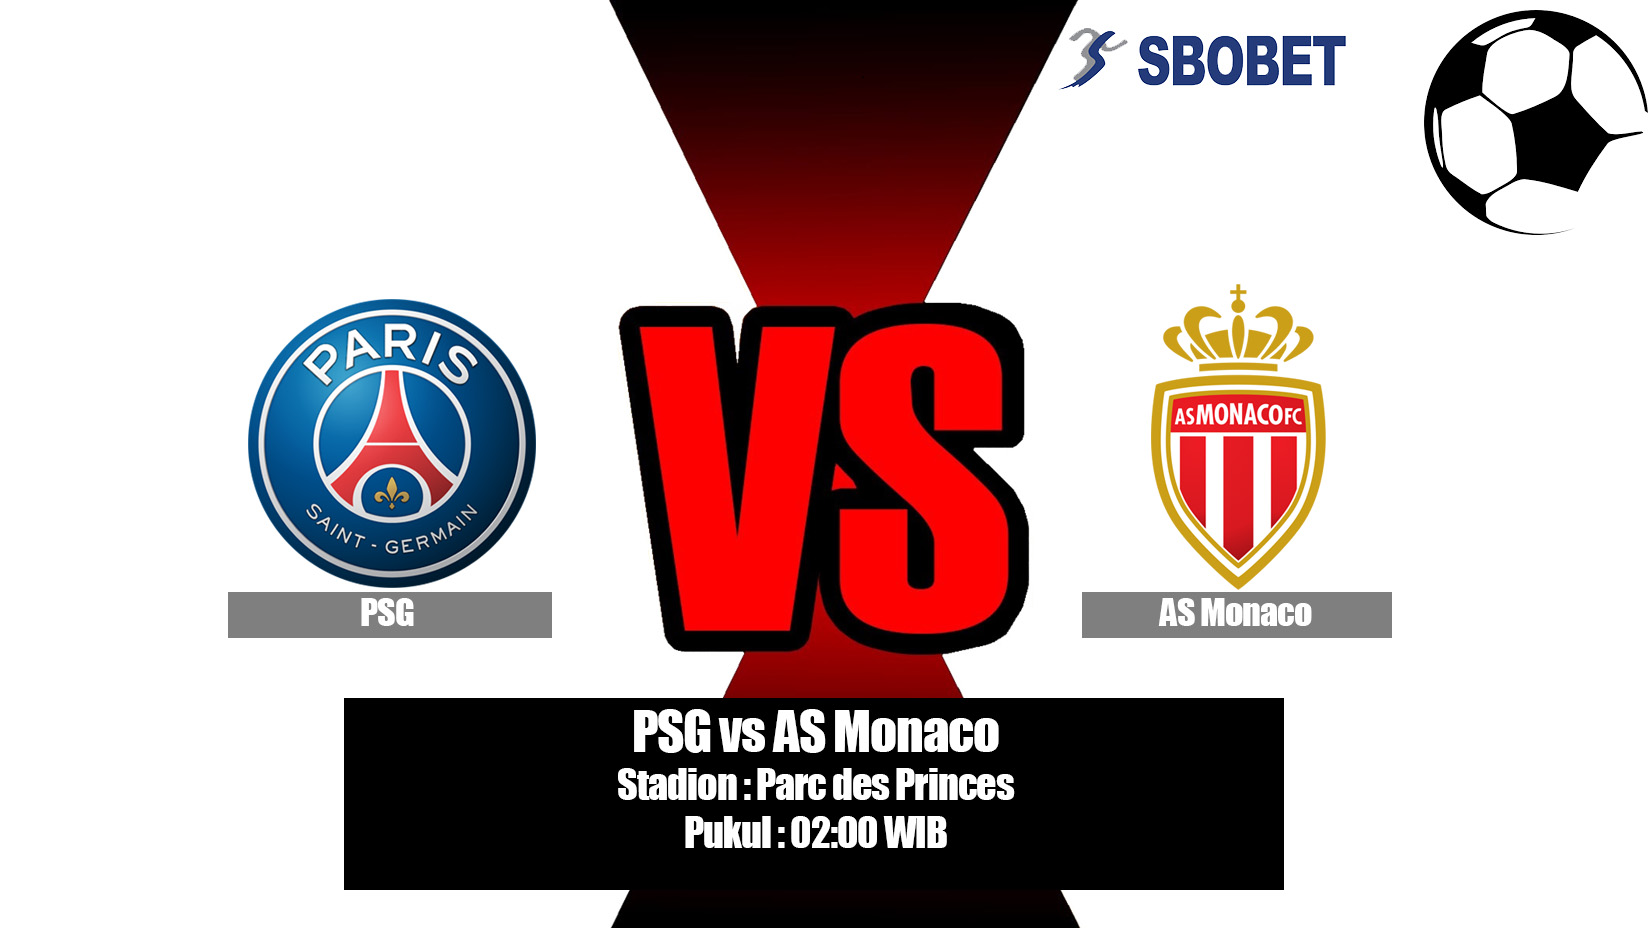 Prediksi Bola PSG vs AS Monaco 22 April 2019